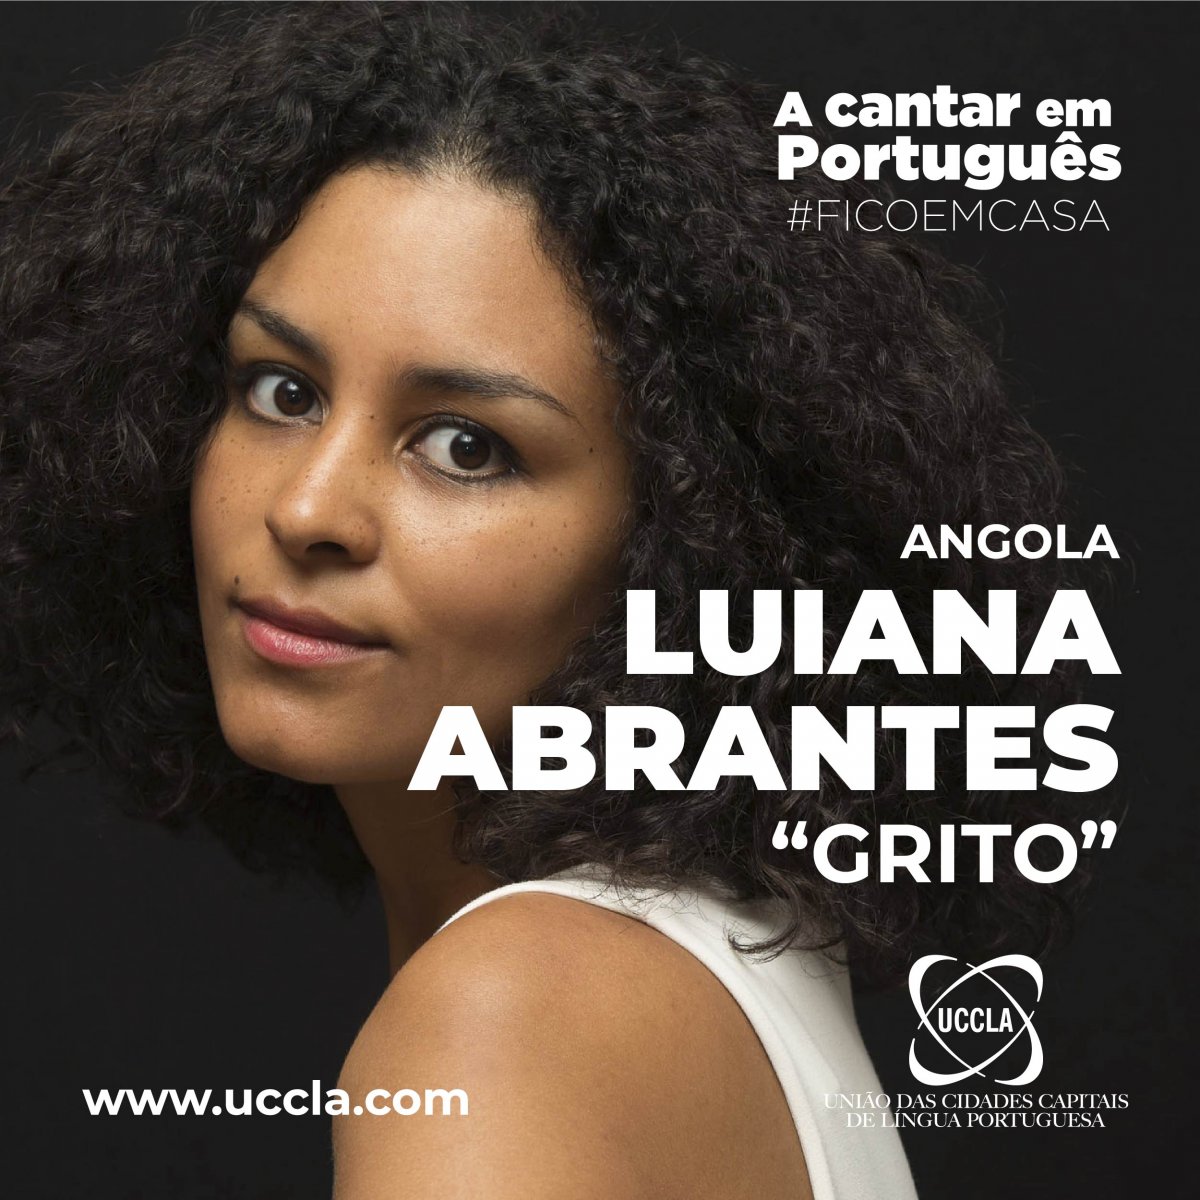 Luiana Abrantes (Angola)